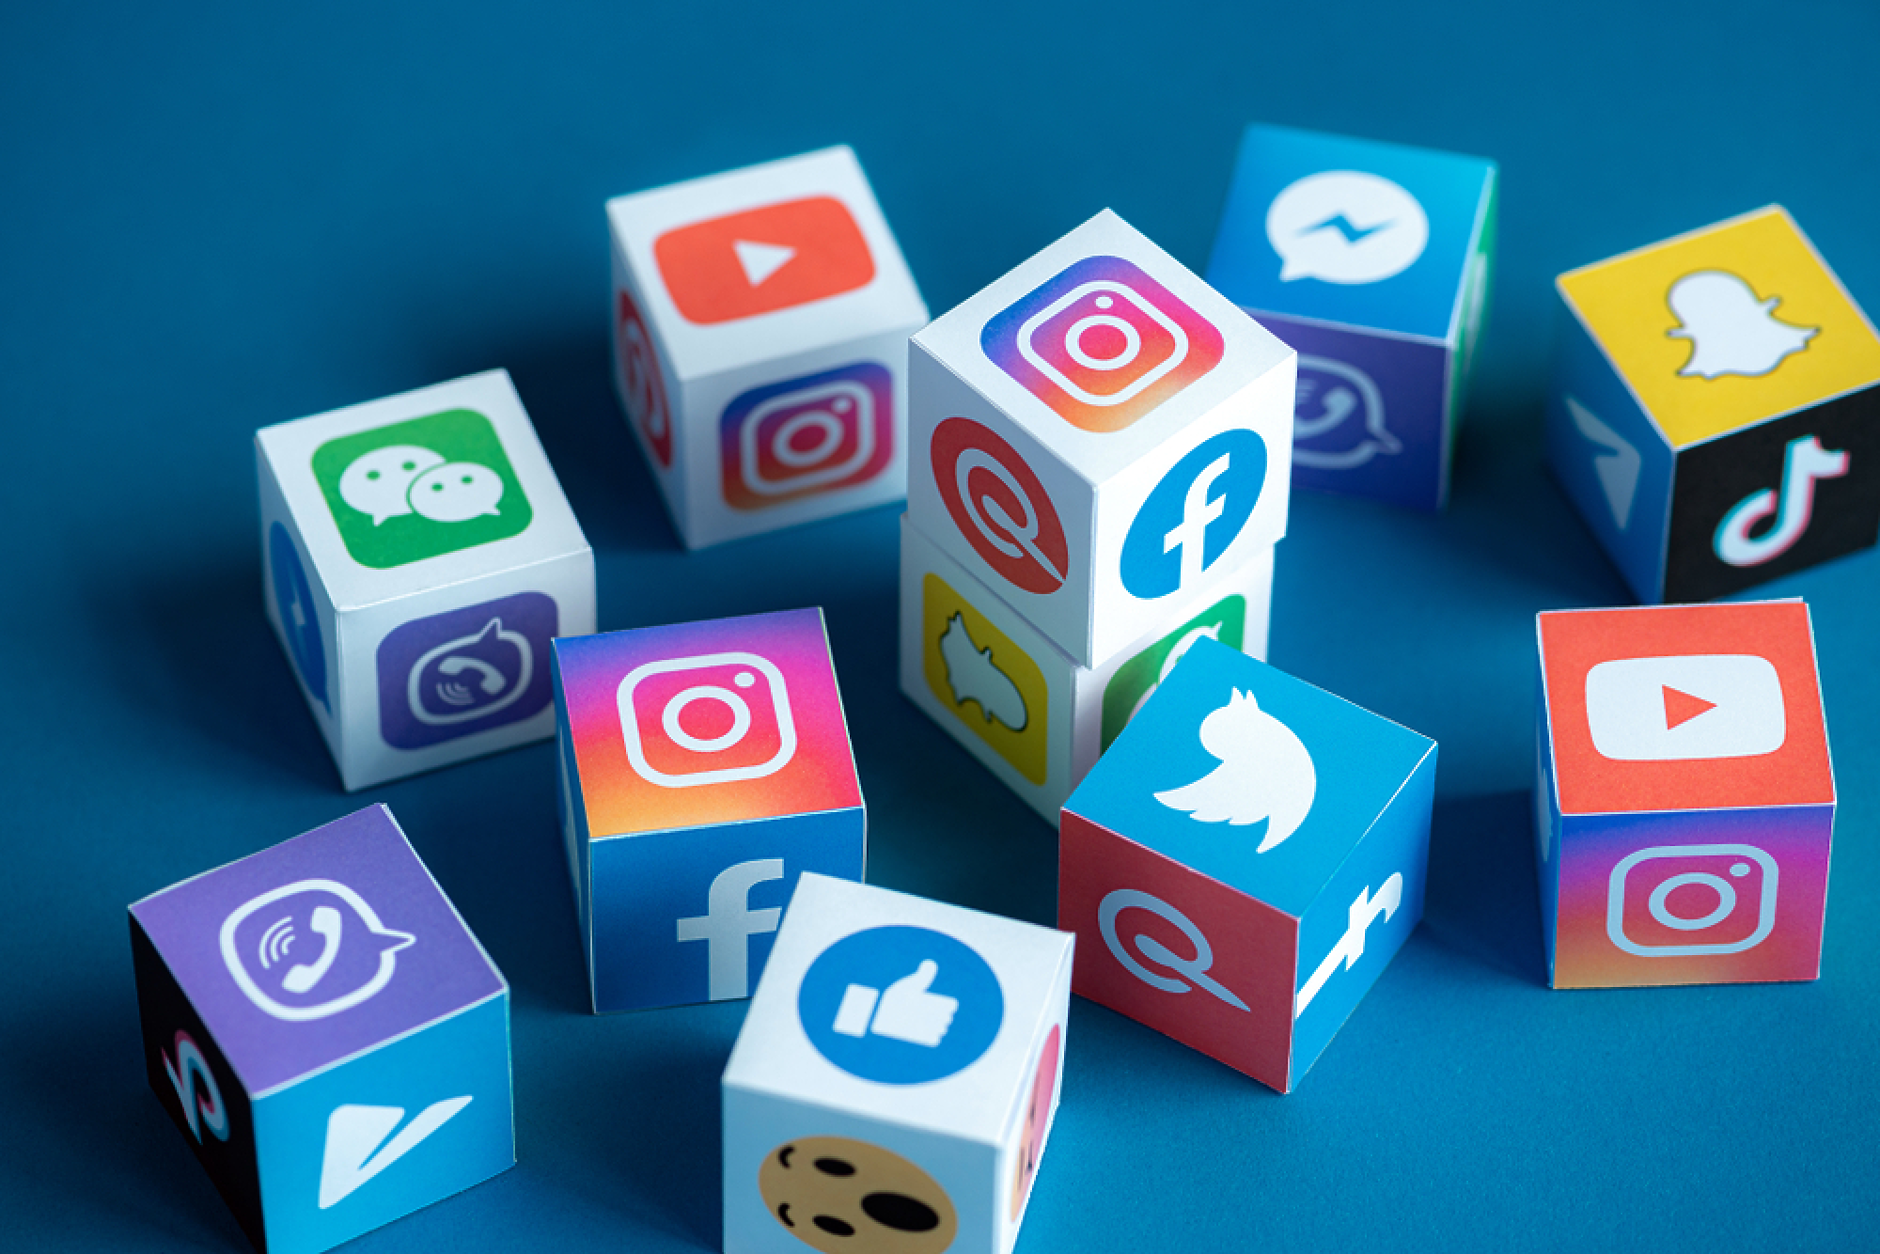 Как да трансформирате бизнеса си чрез брандинг в социалните медии